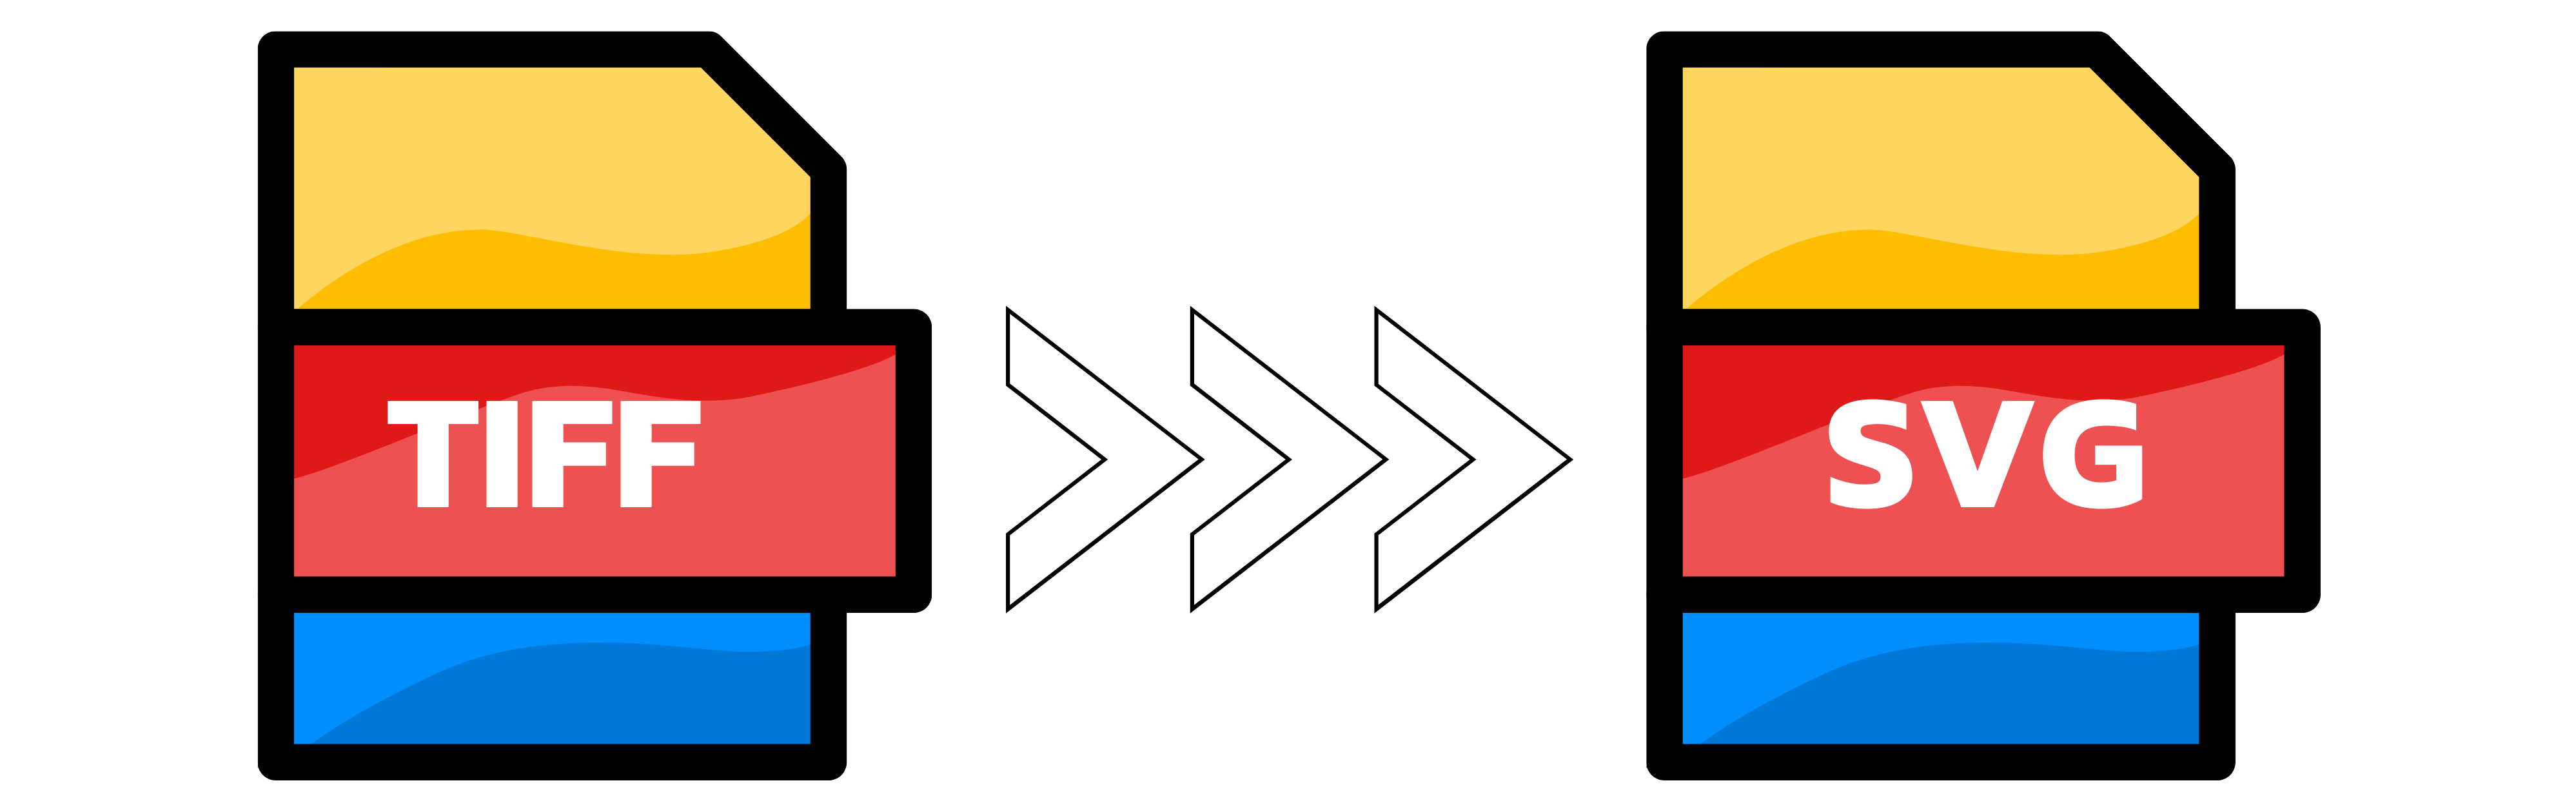 Ilustração: Conversão de TIFF para SVG